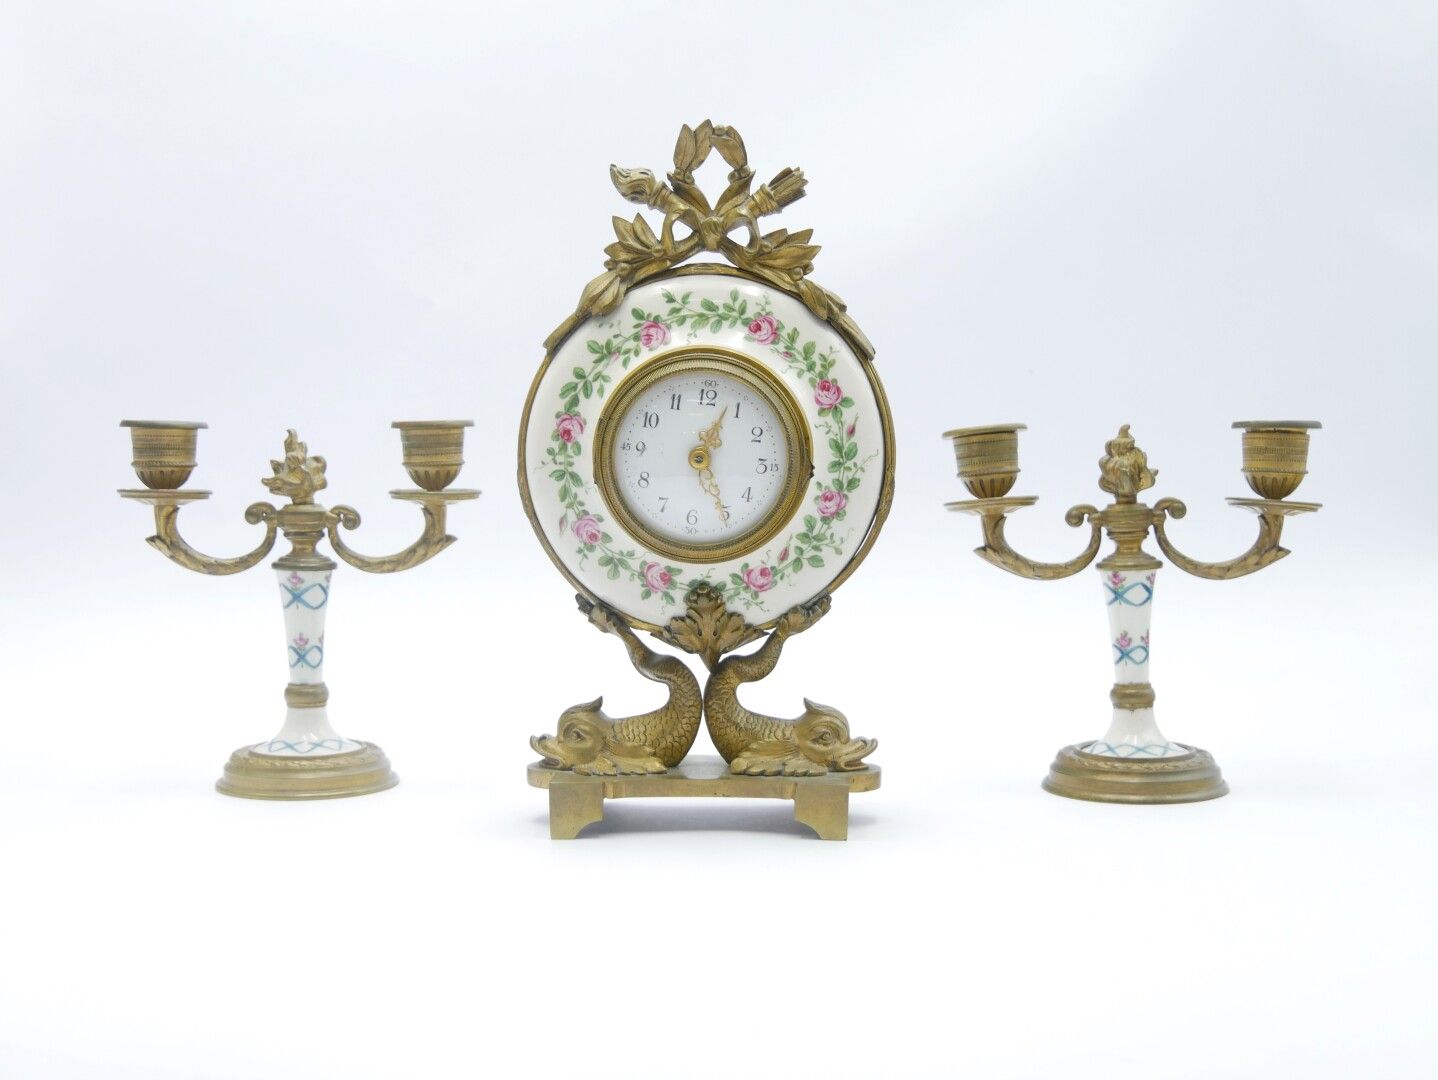 Null finales del siglo XIX

Mantelería que incluye un reloj de porcelana con ros&hellip;